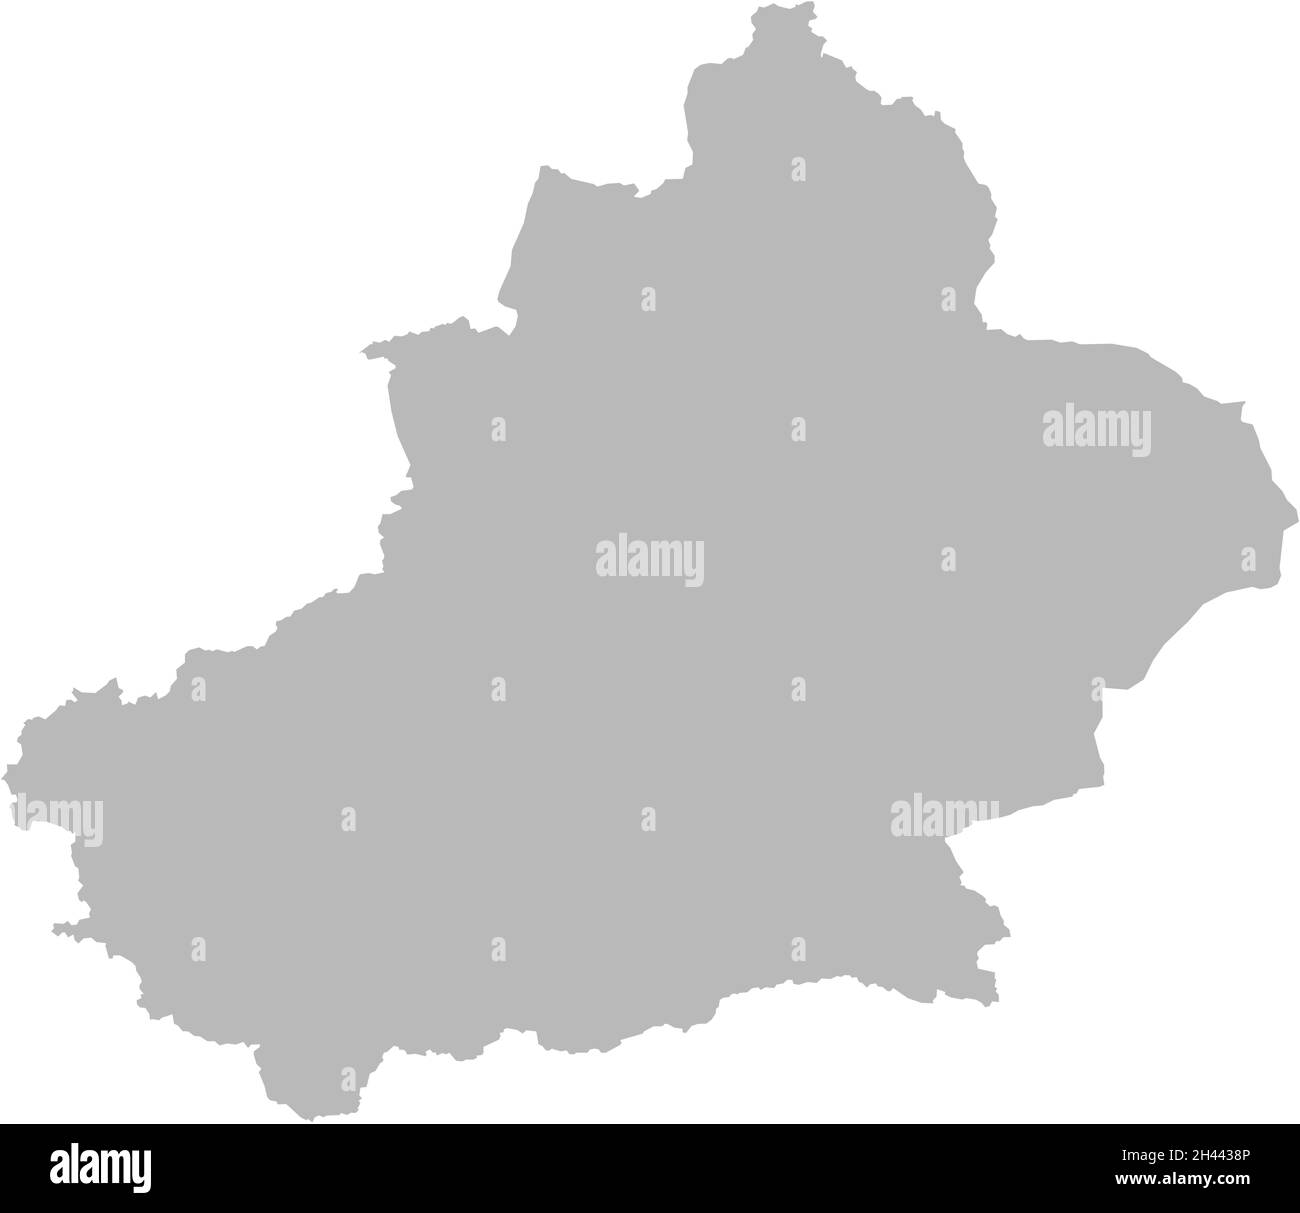 Mappa della regione autonoma di xinjiang Uyghur in Cina. Sfondo grigio. Concetti e background aziendali. Illustrazione Vettoriale